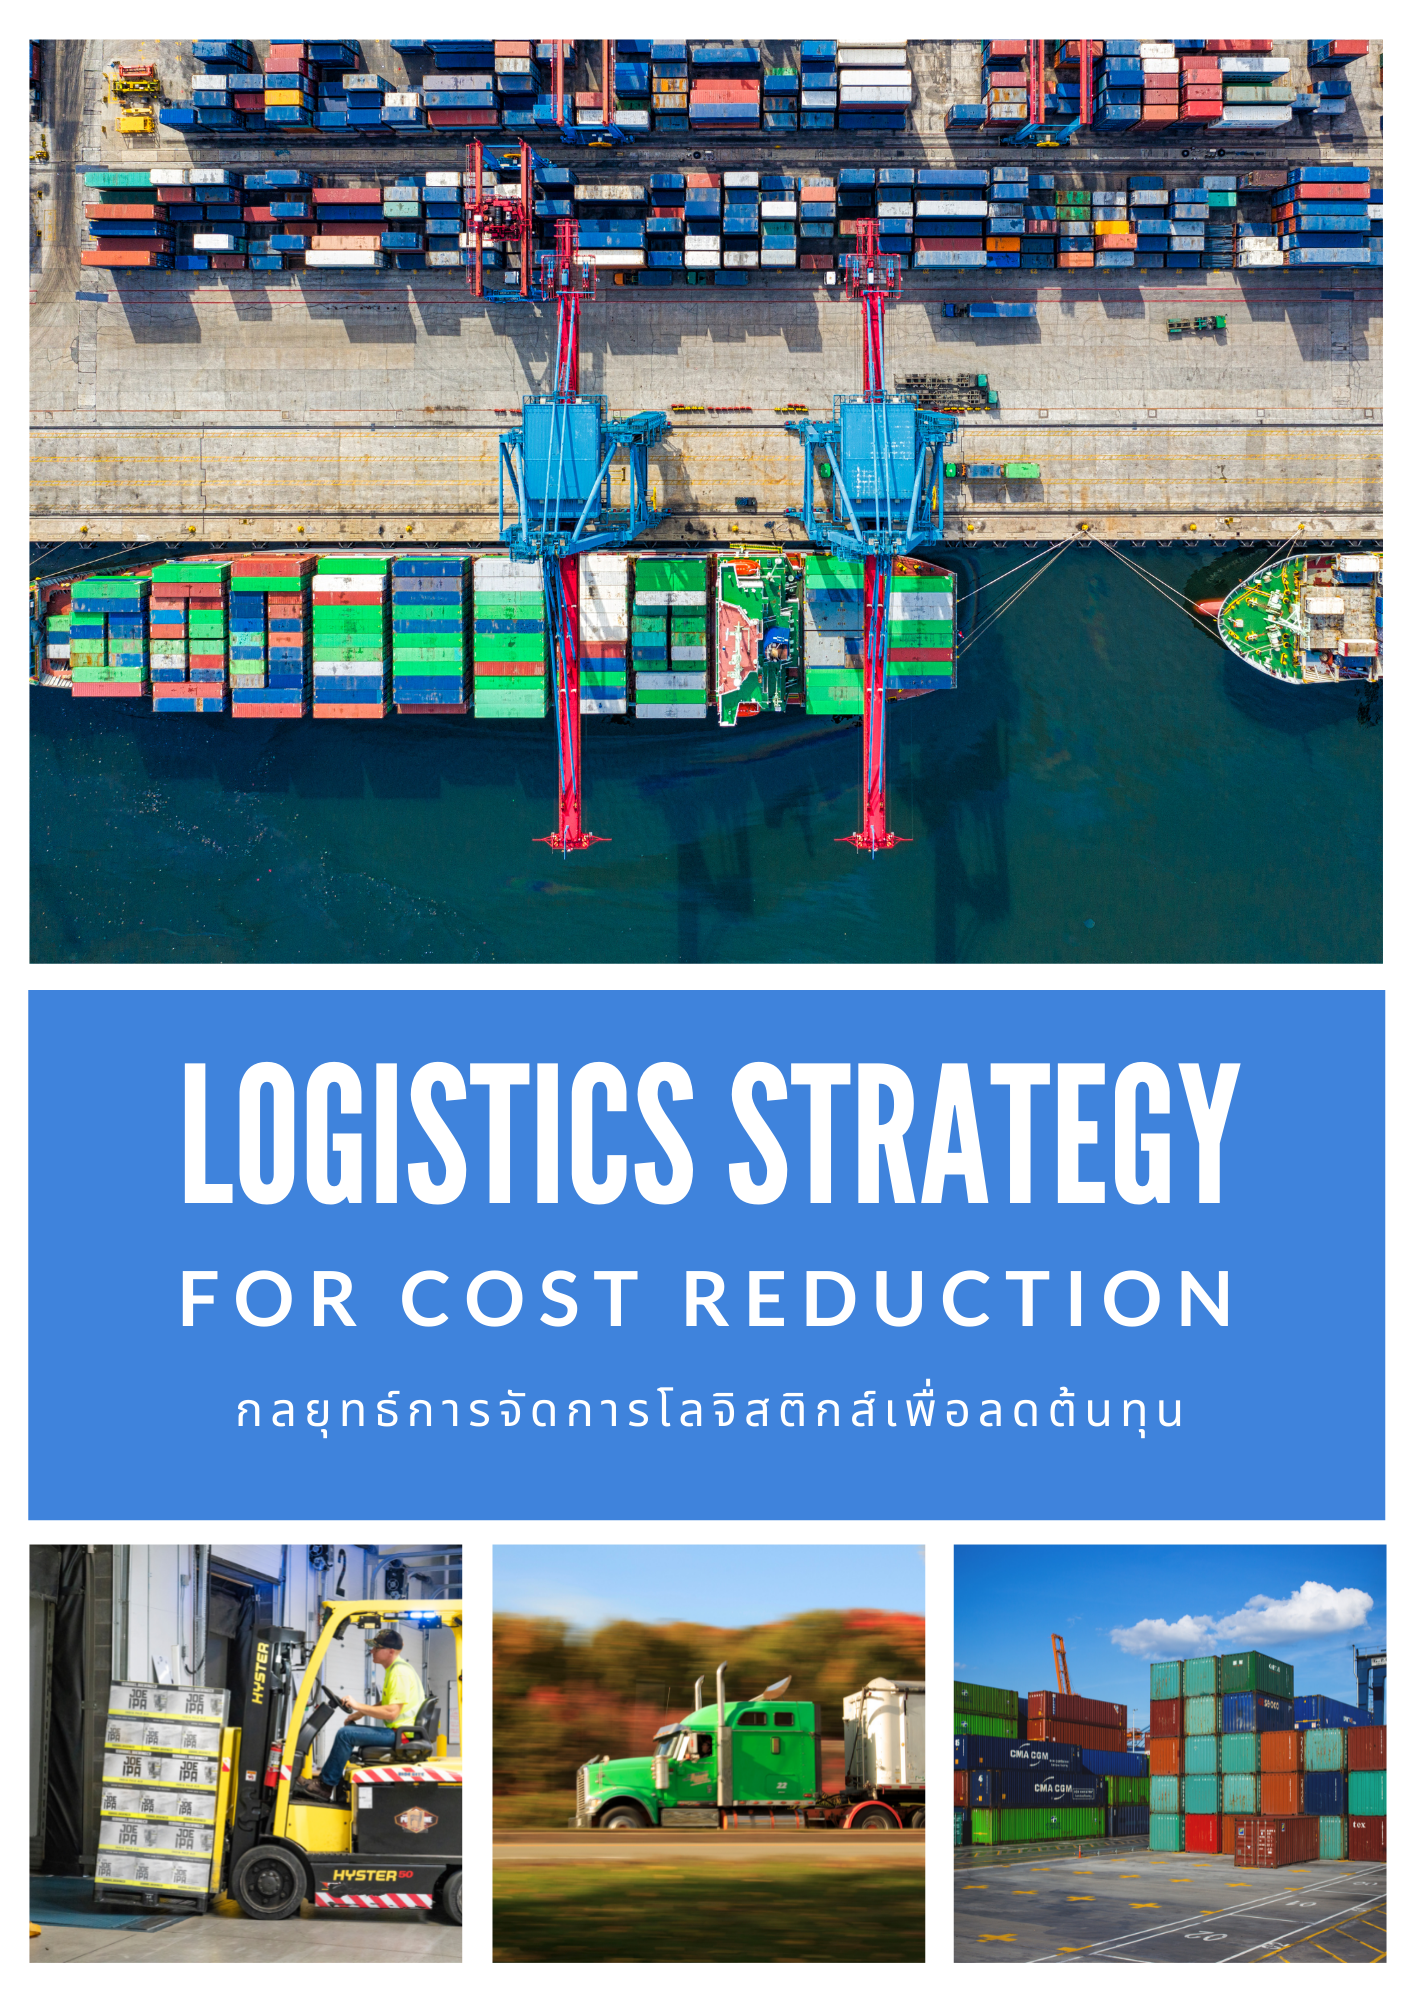 กลยุทธ์การจัดการโลจิสติกส์เพื่อลดต้นทุน (Logistics Strategy for Cost Reduction)